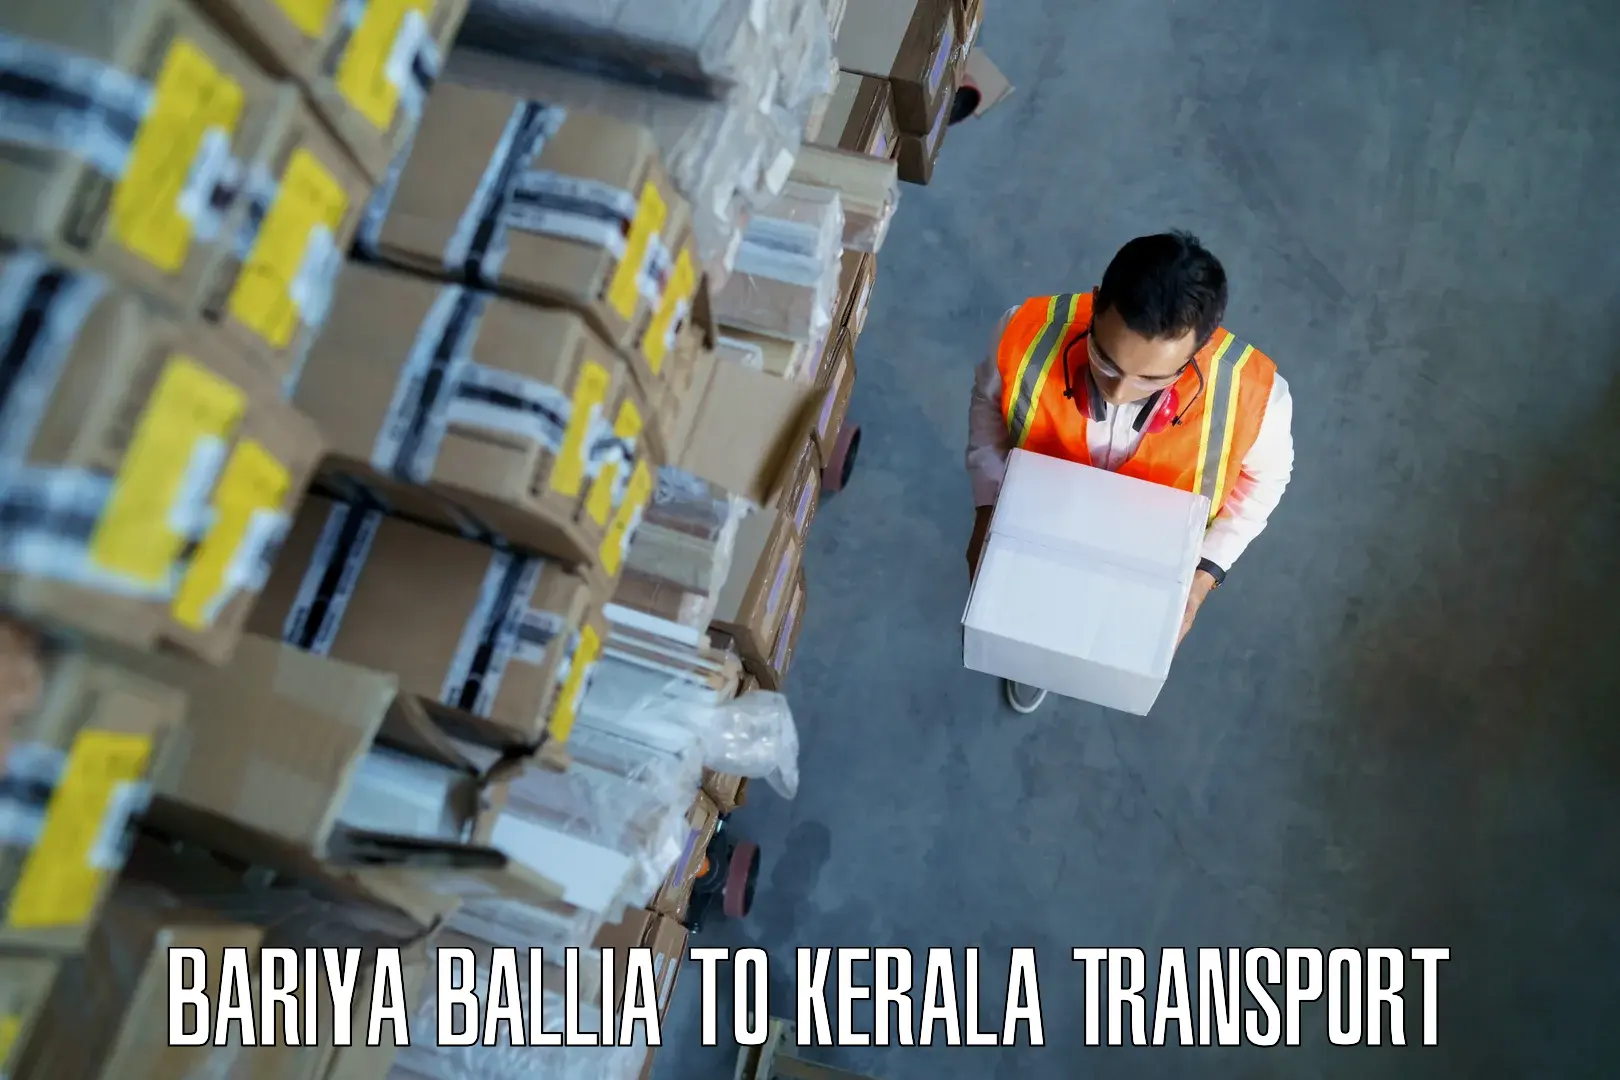 Express transport services Bariya Ballia to Payyanur